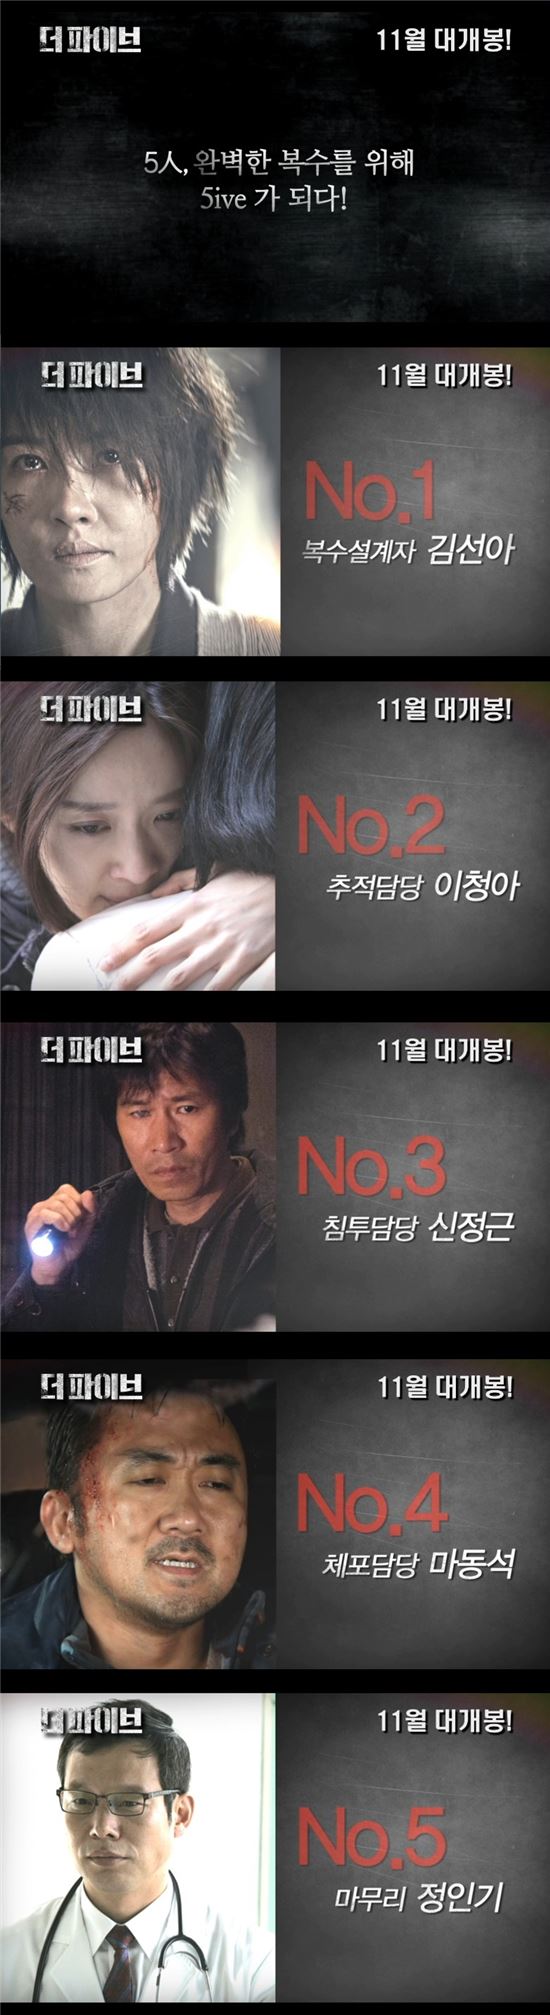 '더파이브', 복수 품은 다섯 캐릭터 영상 최초 공개